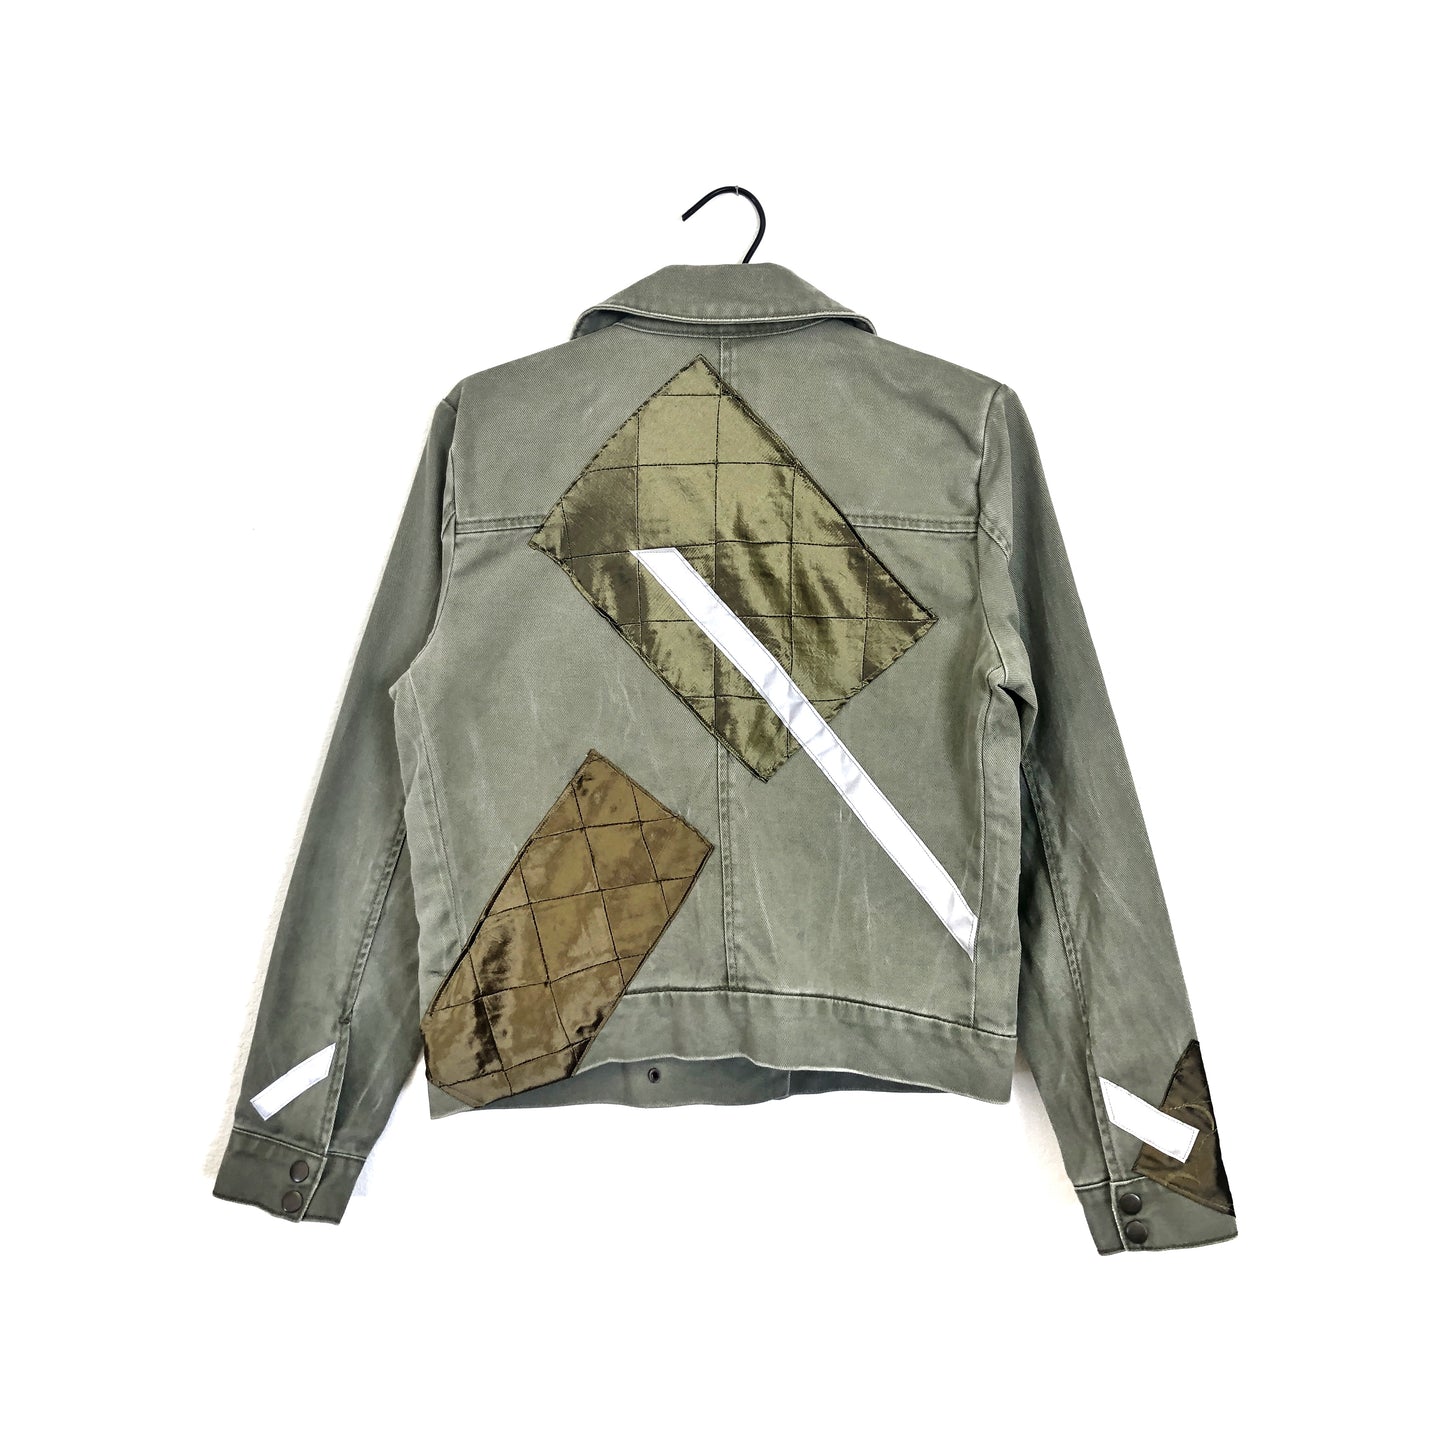 Reflective Jacket # 8 - Patch - Size S